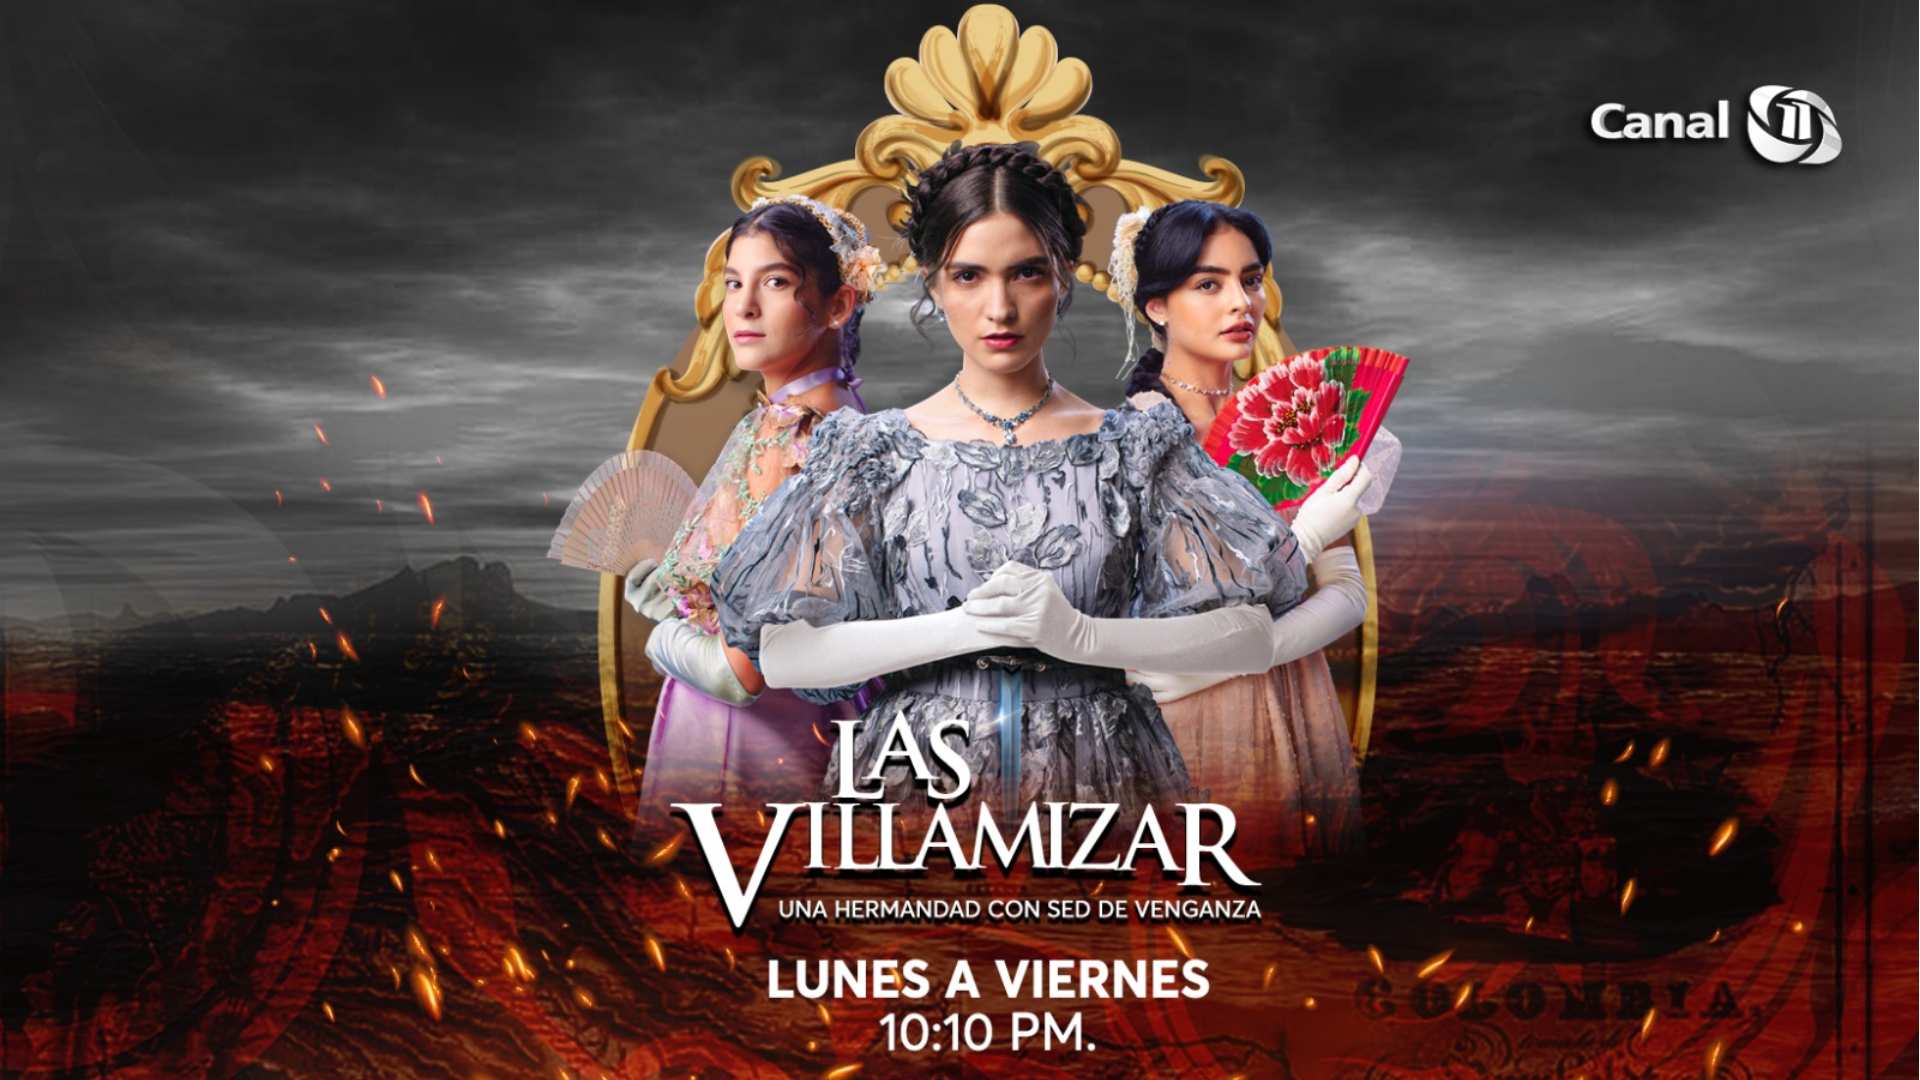 Las Villamizar